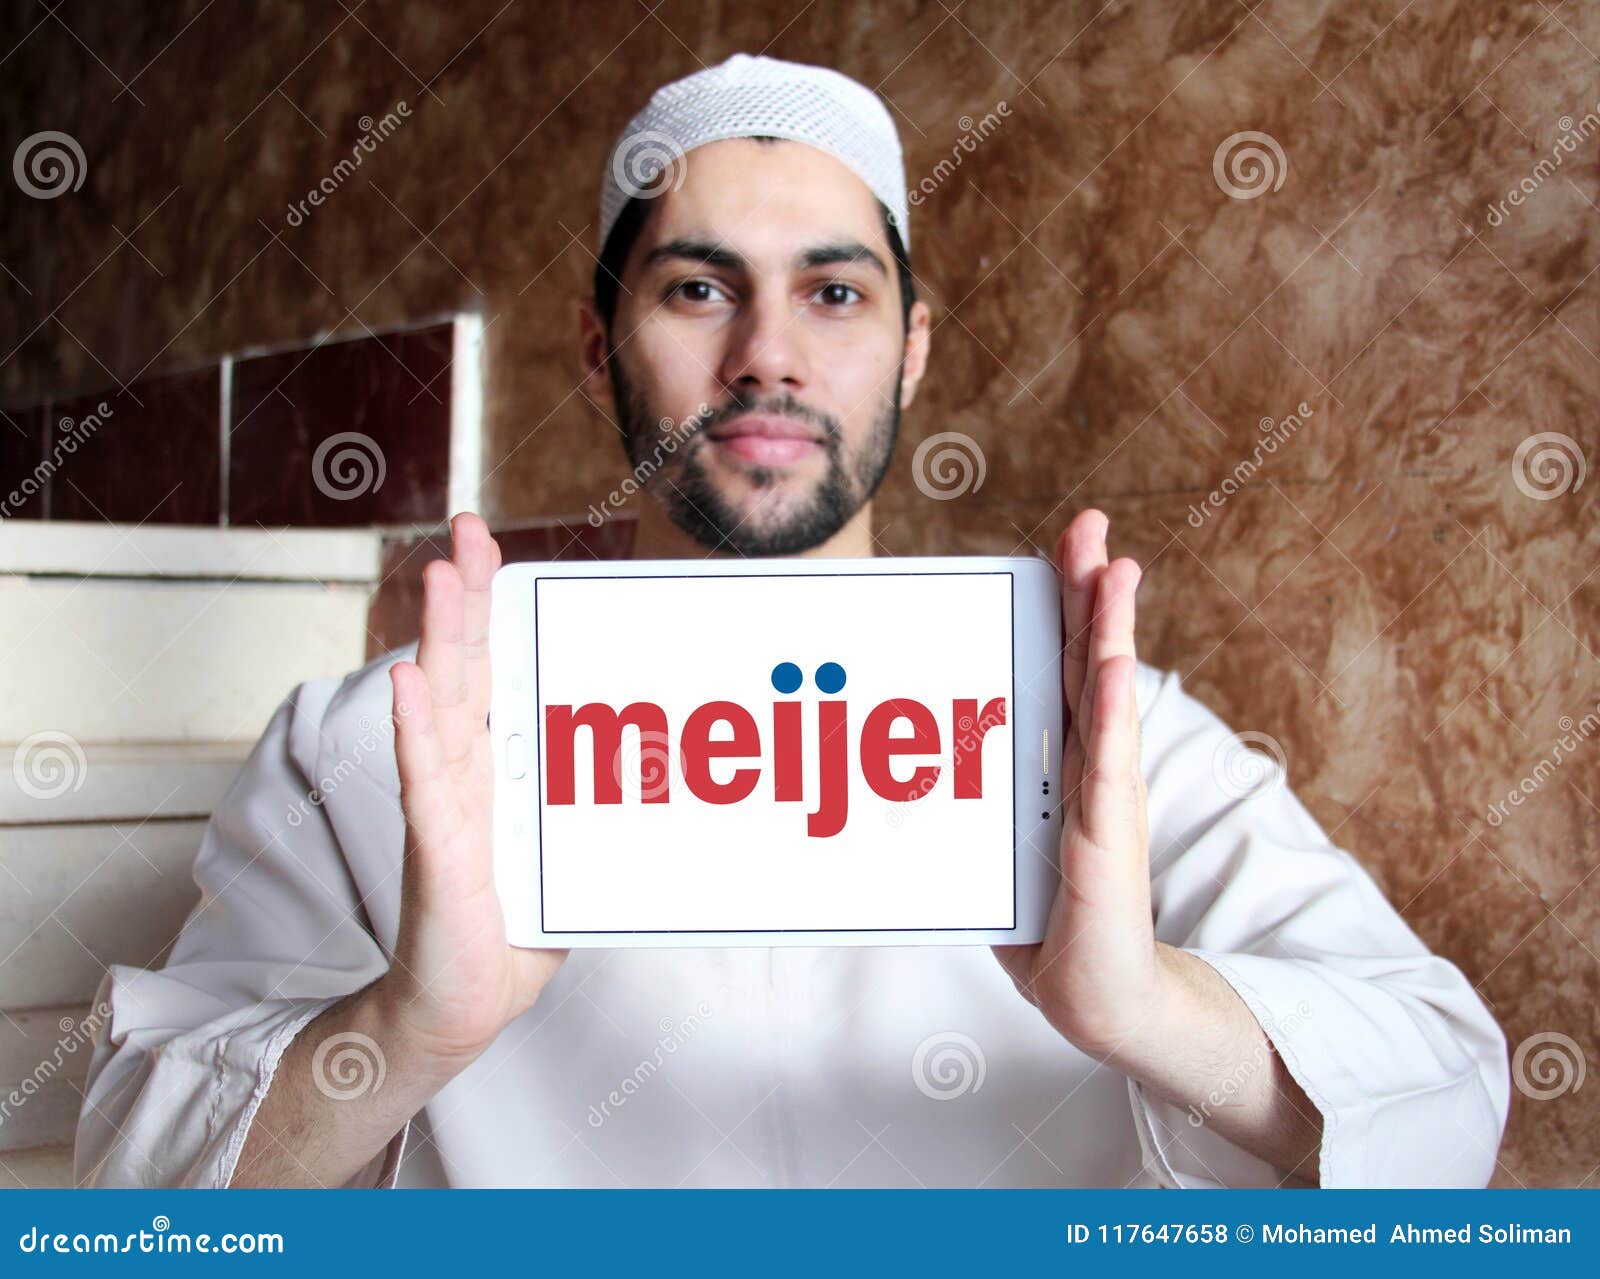 Logo de détaillant de Meijer. Le logo du détaillant de Meijer sur le comprimé de Samsung holded par l'homme musulman arabe Meijer est une chaîne américaine régionale de supercenter